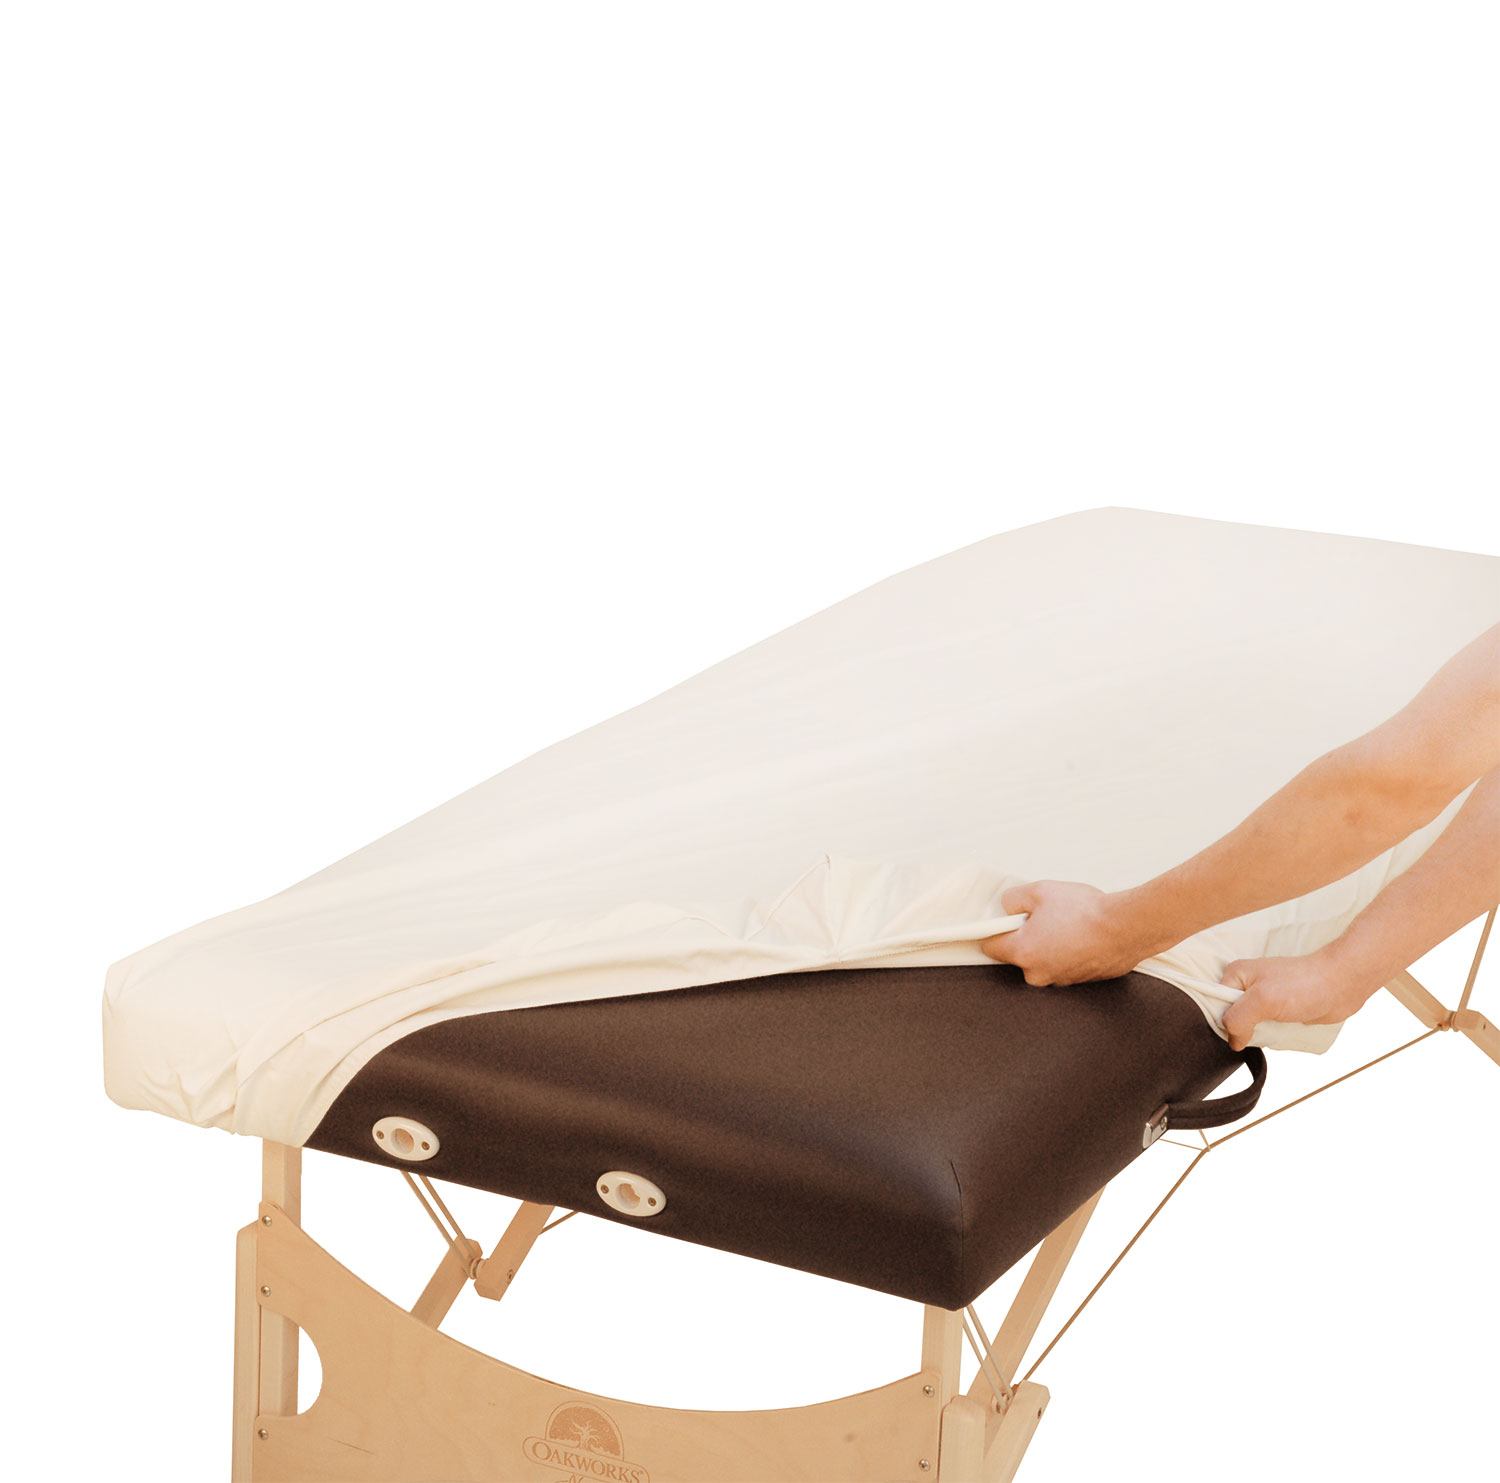 Tout savoir sur les housses de protection pour table de massage